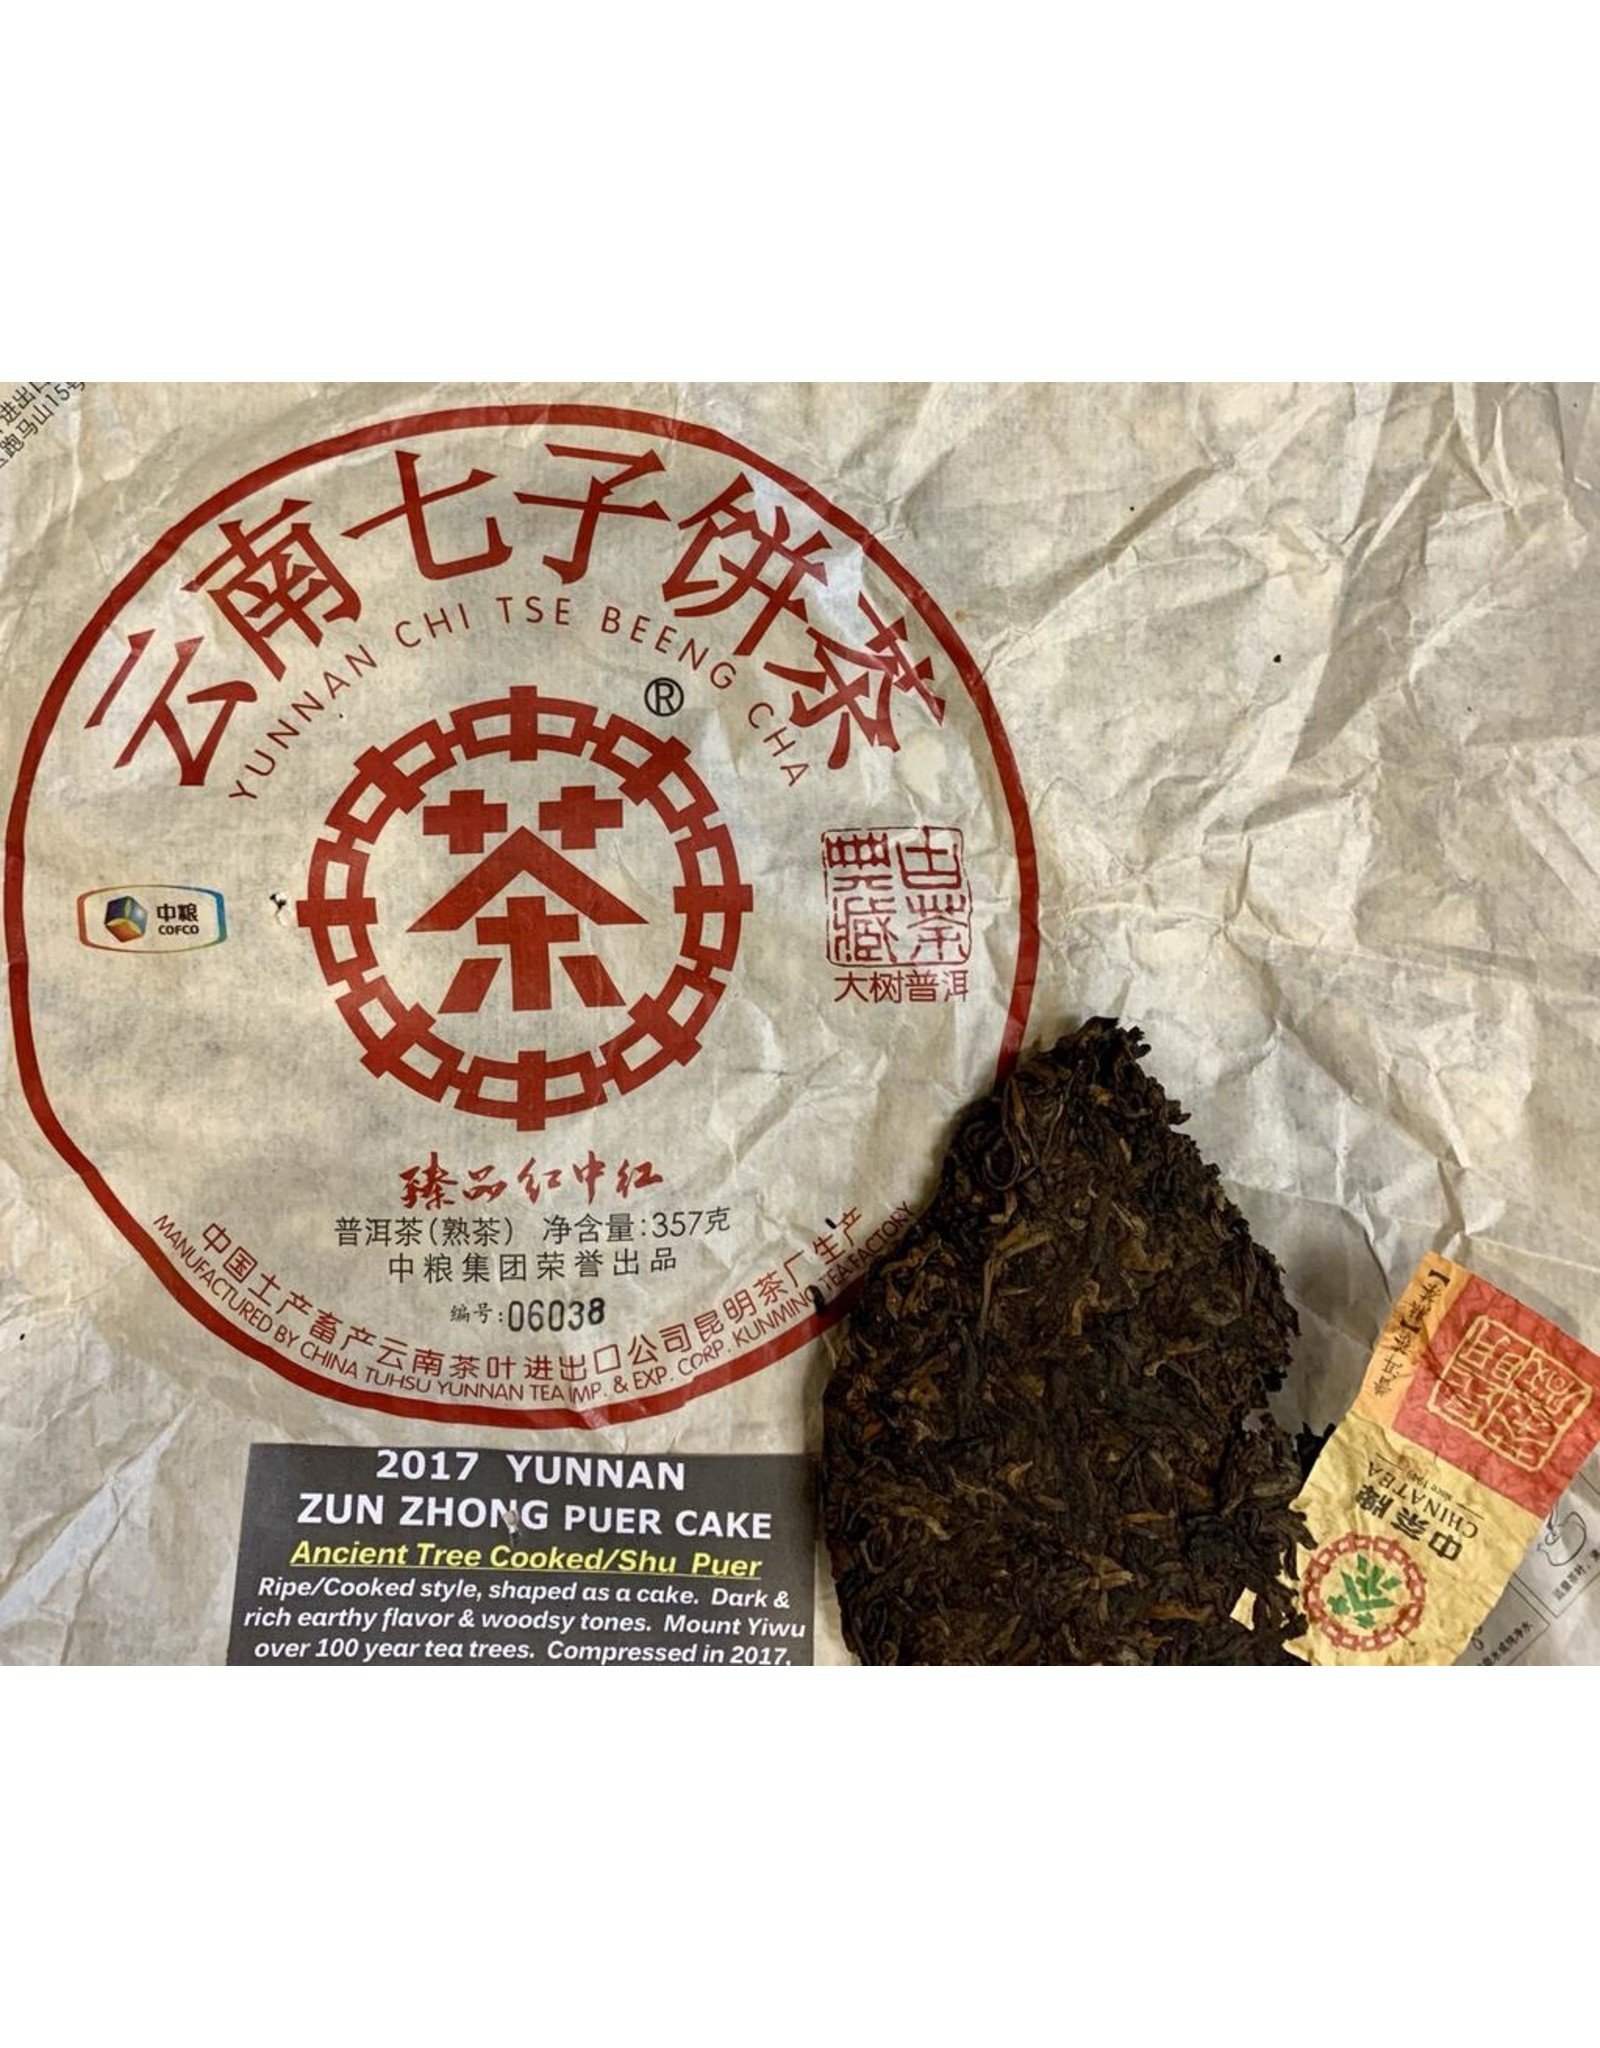 Tea from China Zun Zhong Mt.Yiwu Ancient Tree 2017 Puer (COOKED/SHU)